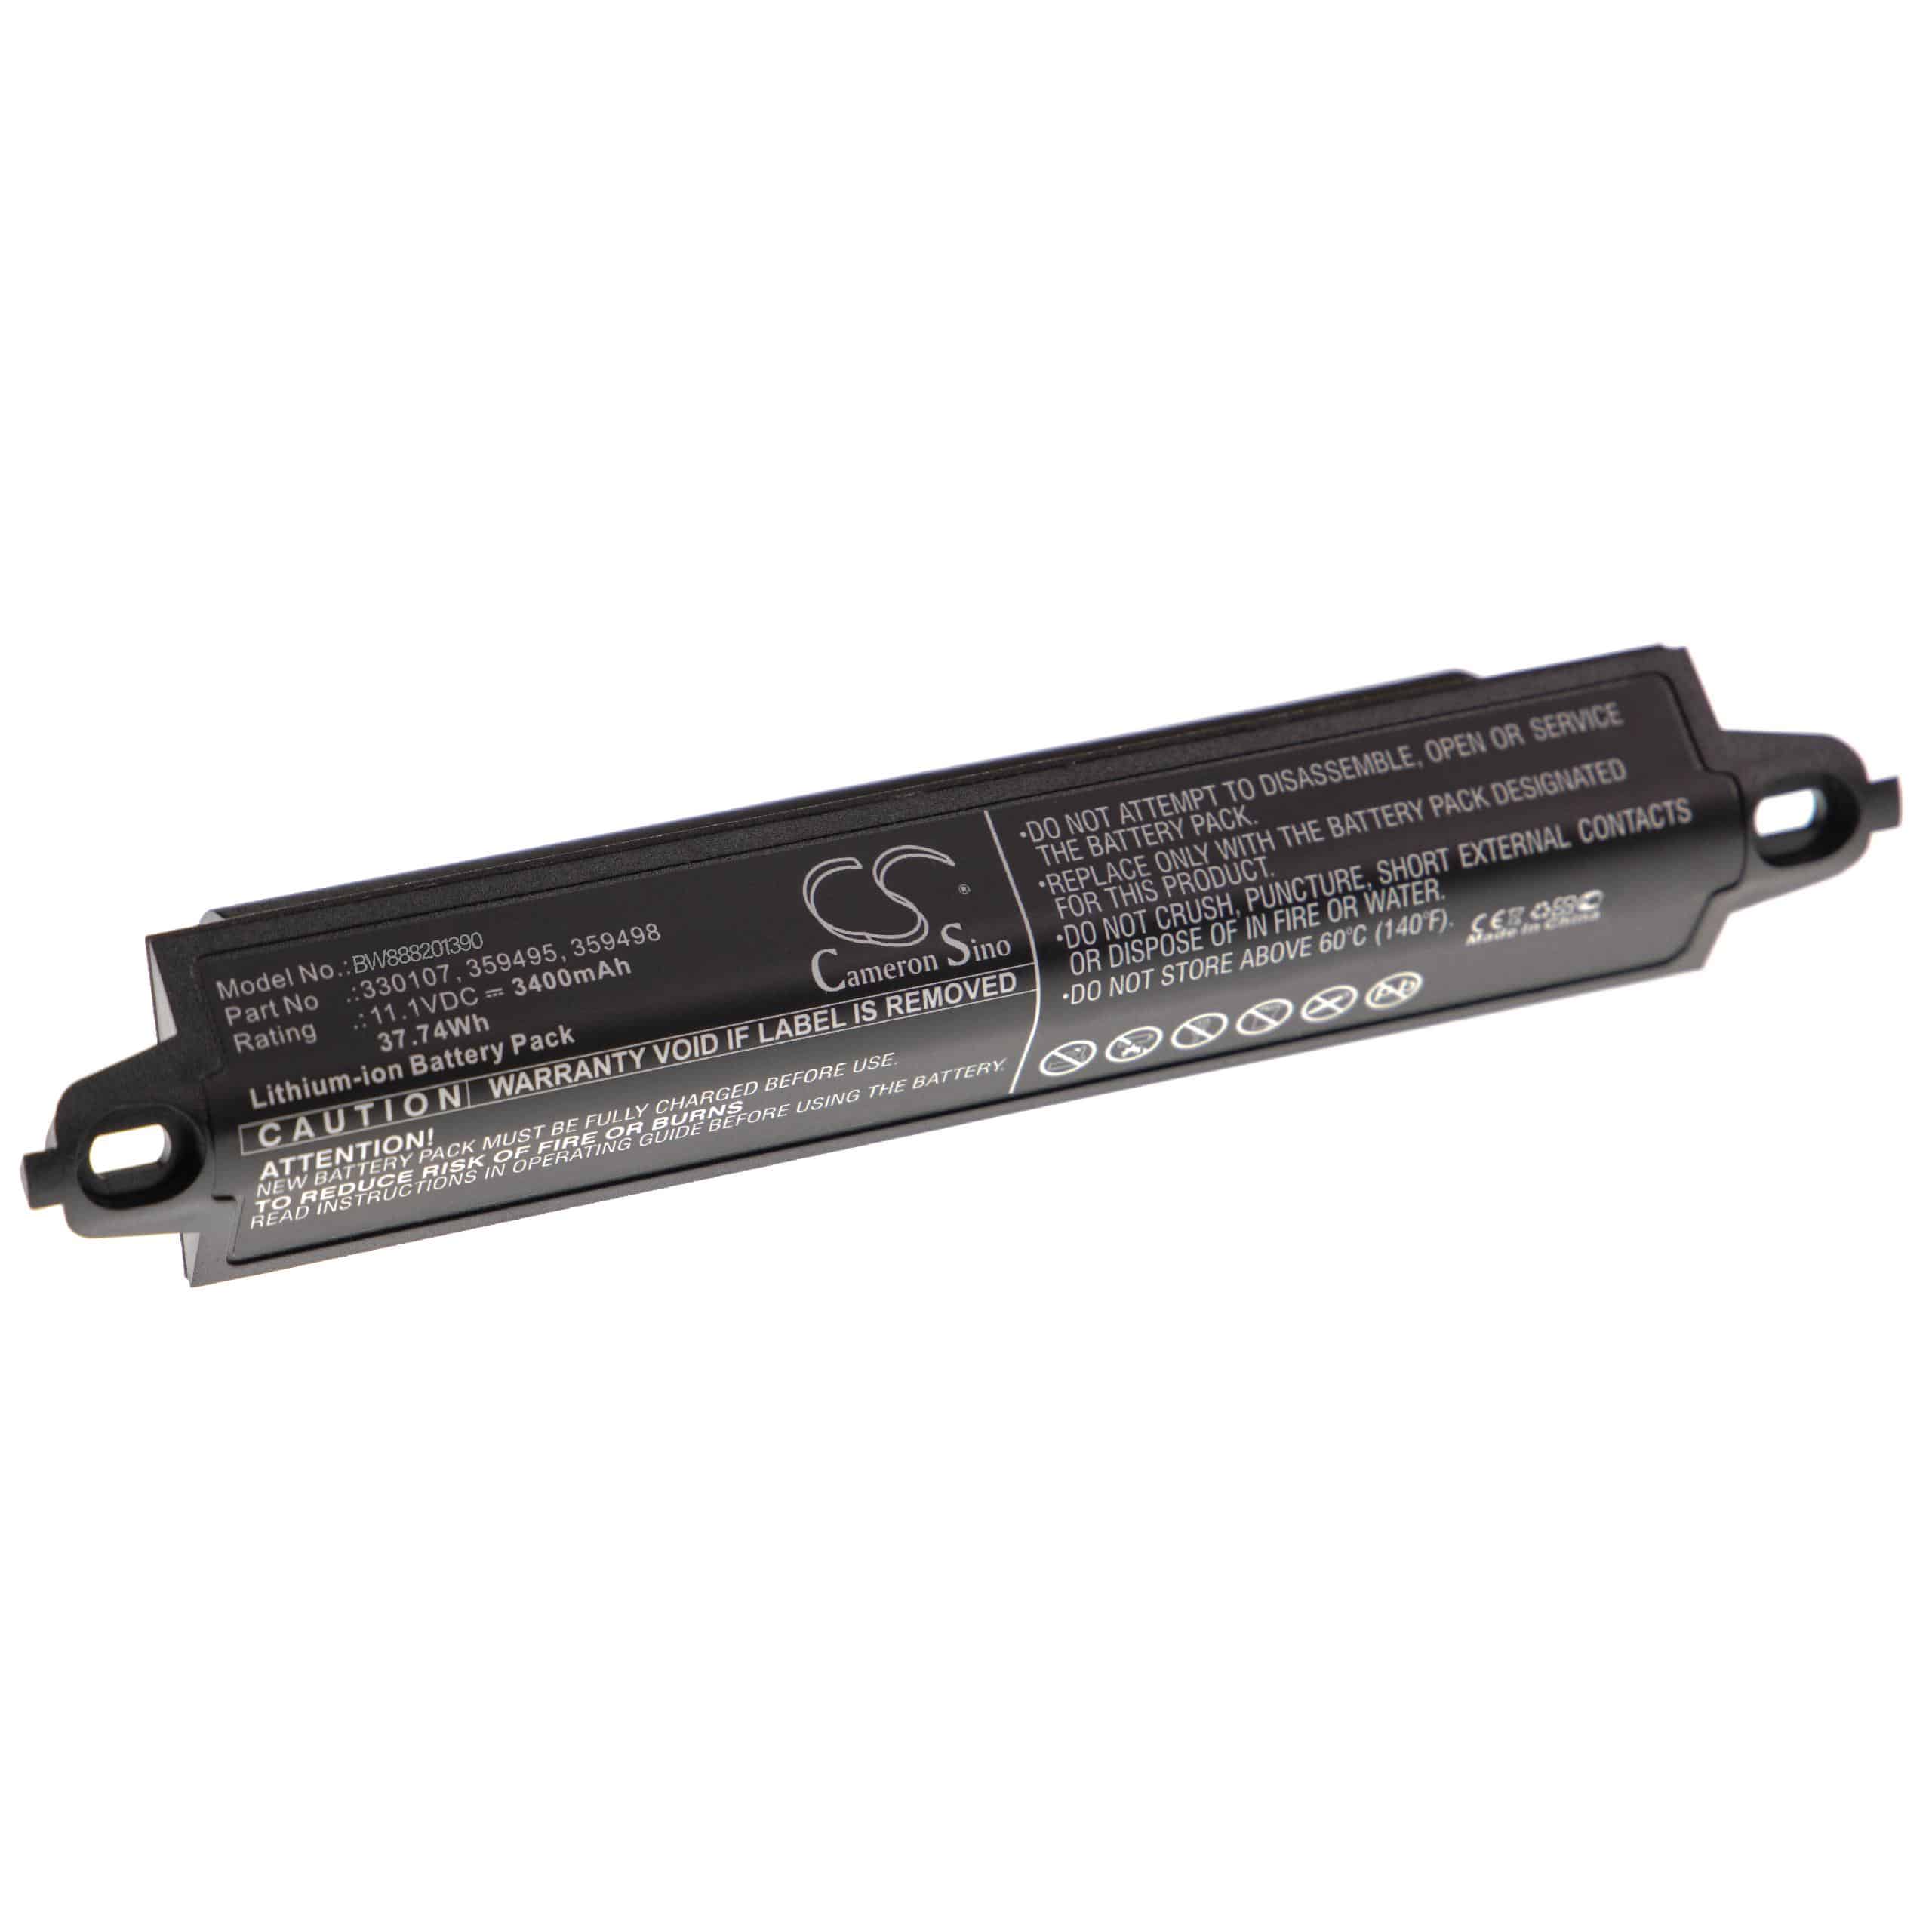 Batterie remplace Bose 330107A, 330107, 330105, 359495, 330105A pour enceinte Bose - 3400mAh 11,1V Li-ion